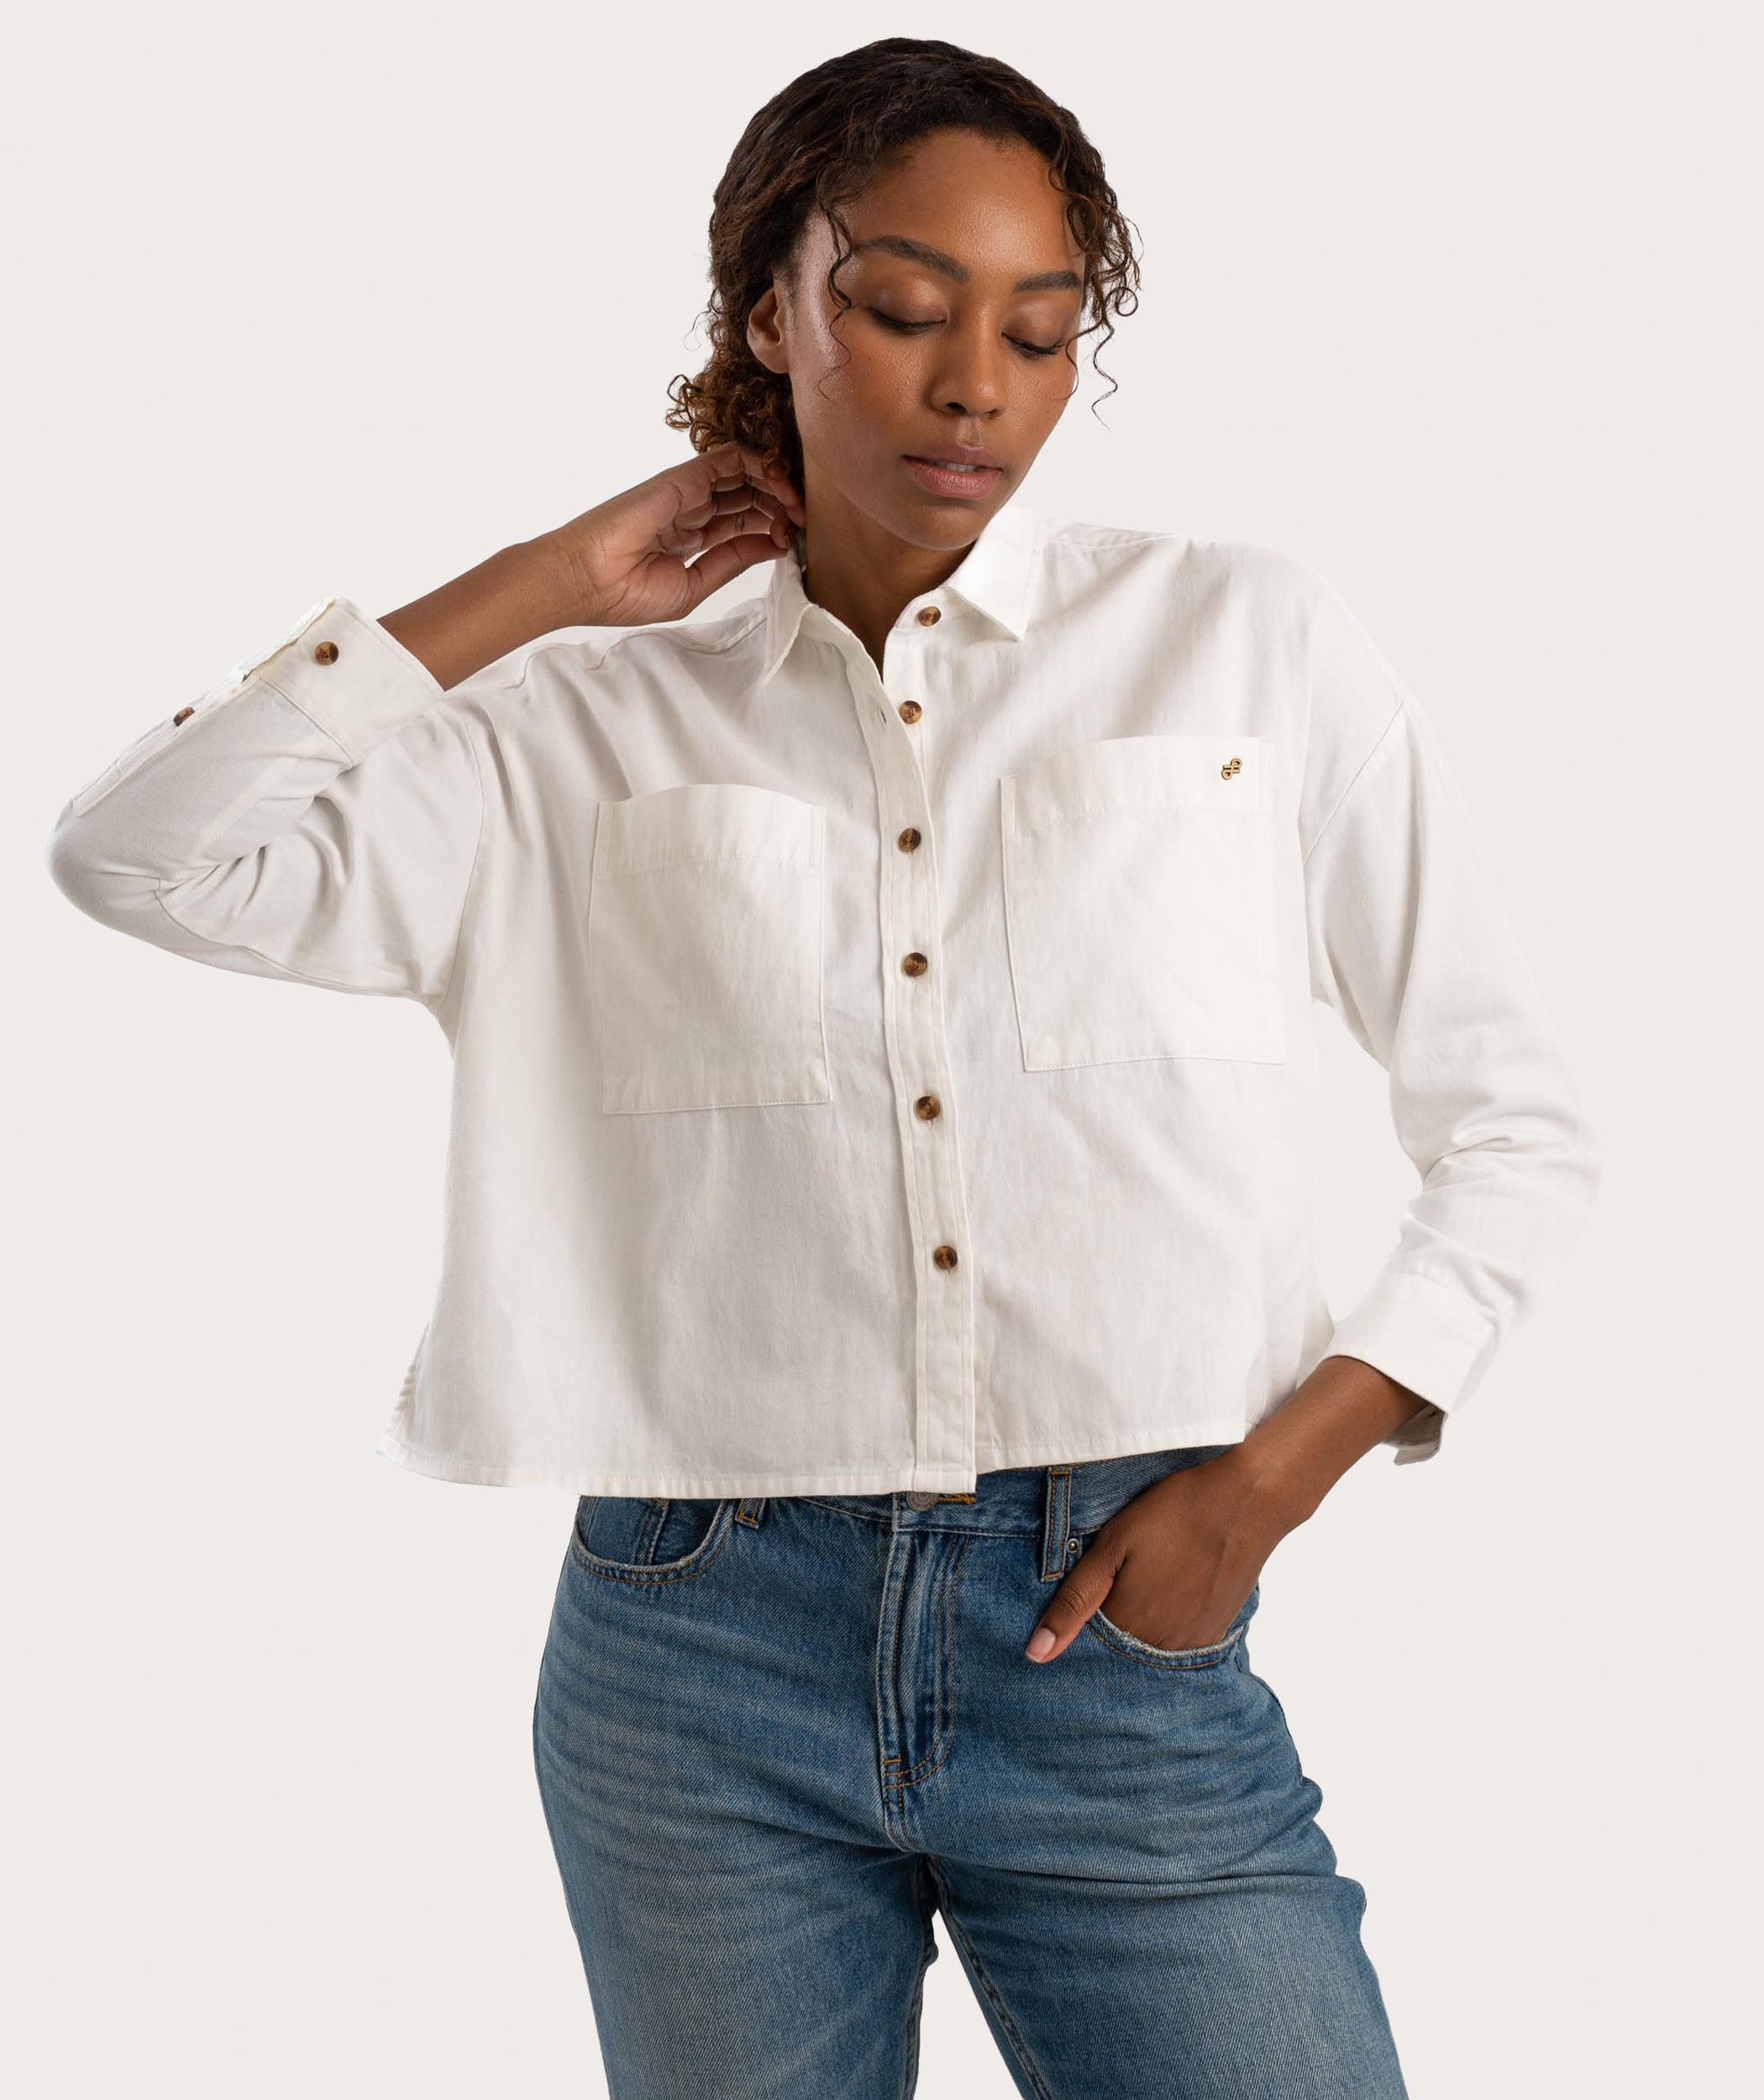 Ladies Boxy Long Sleeve Shirt - Soft White